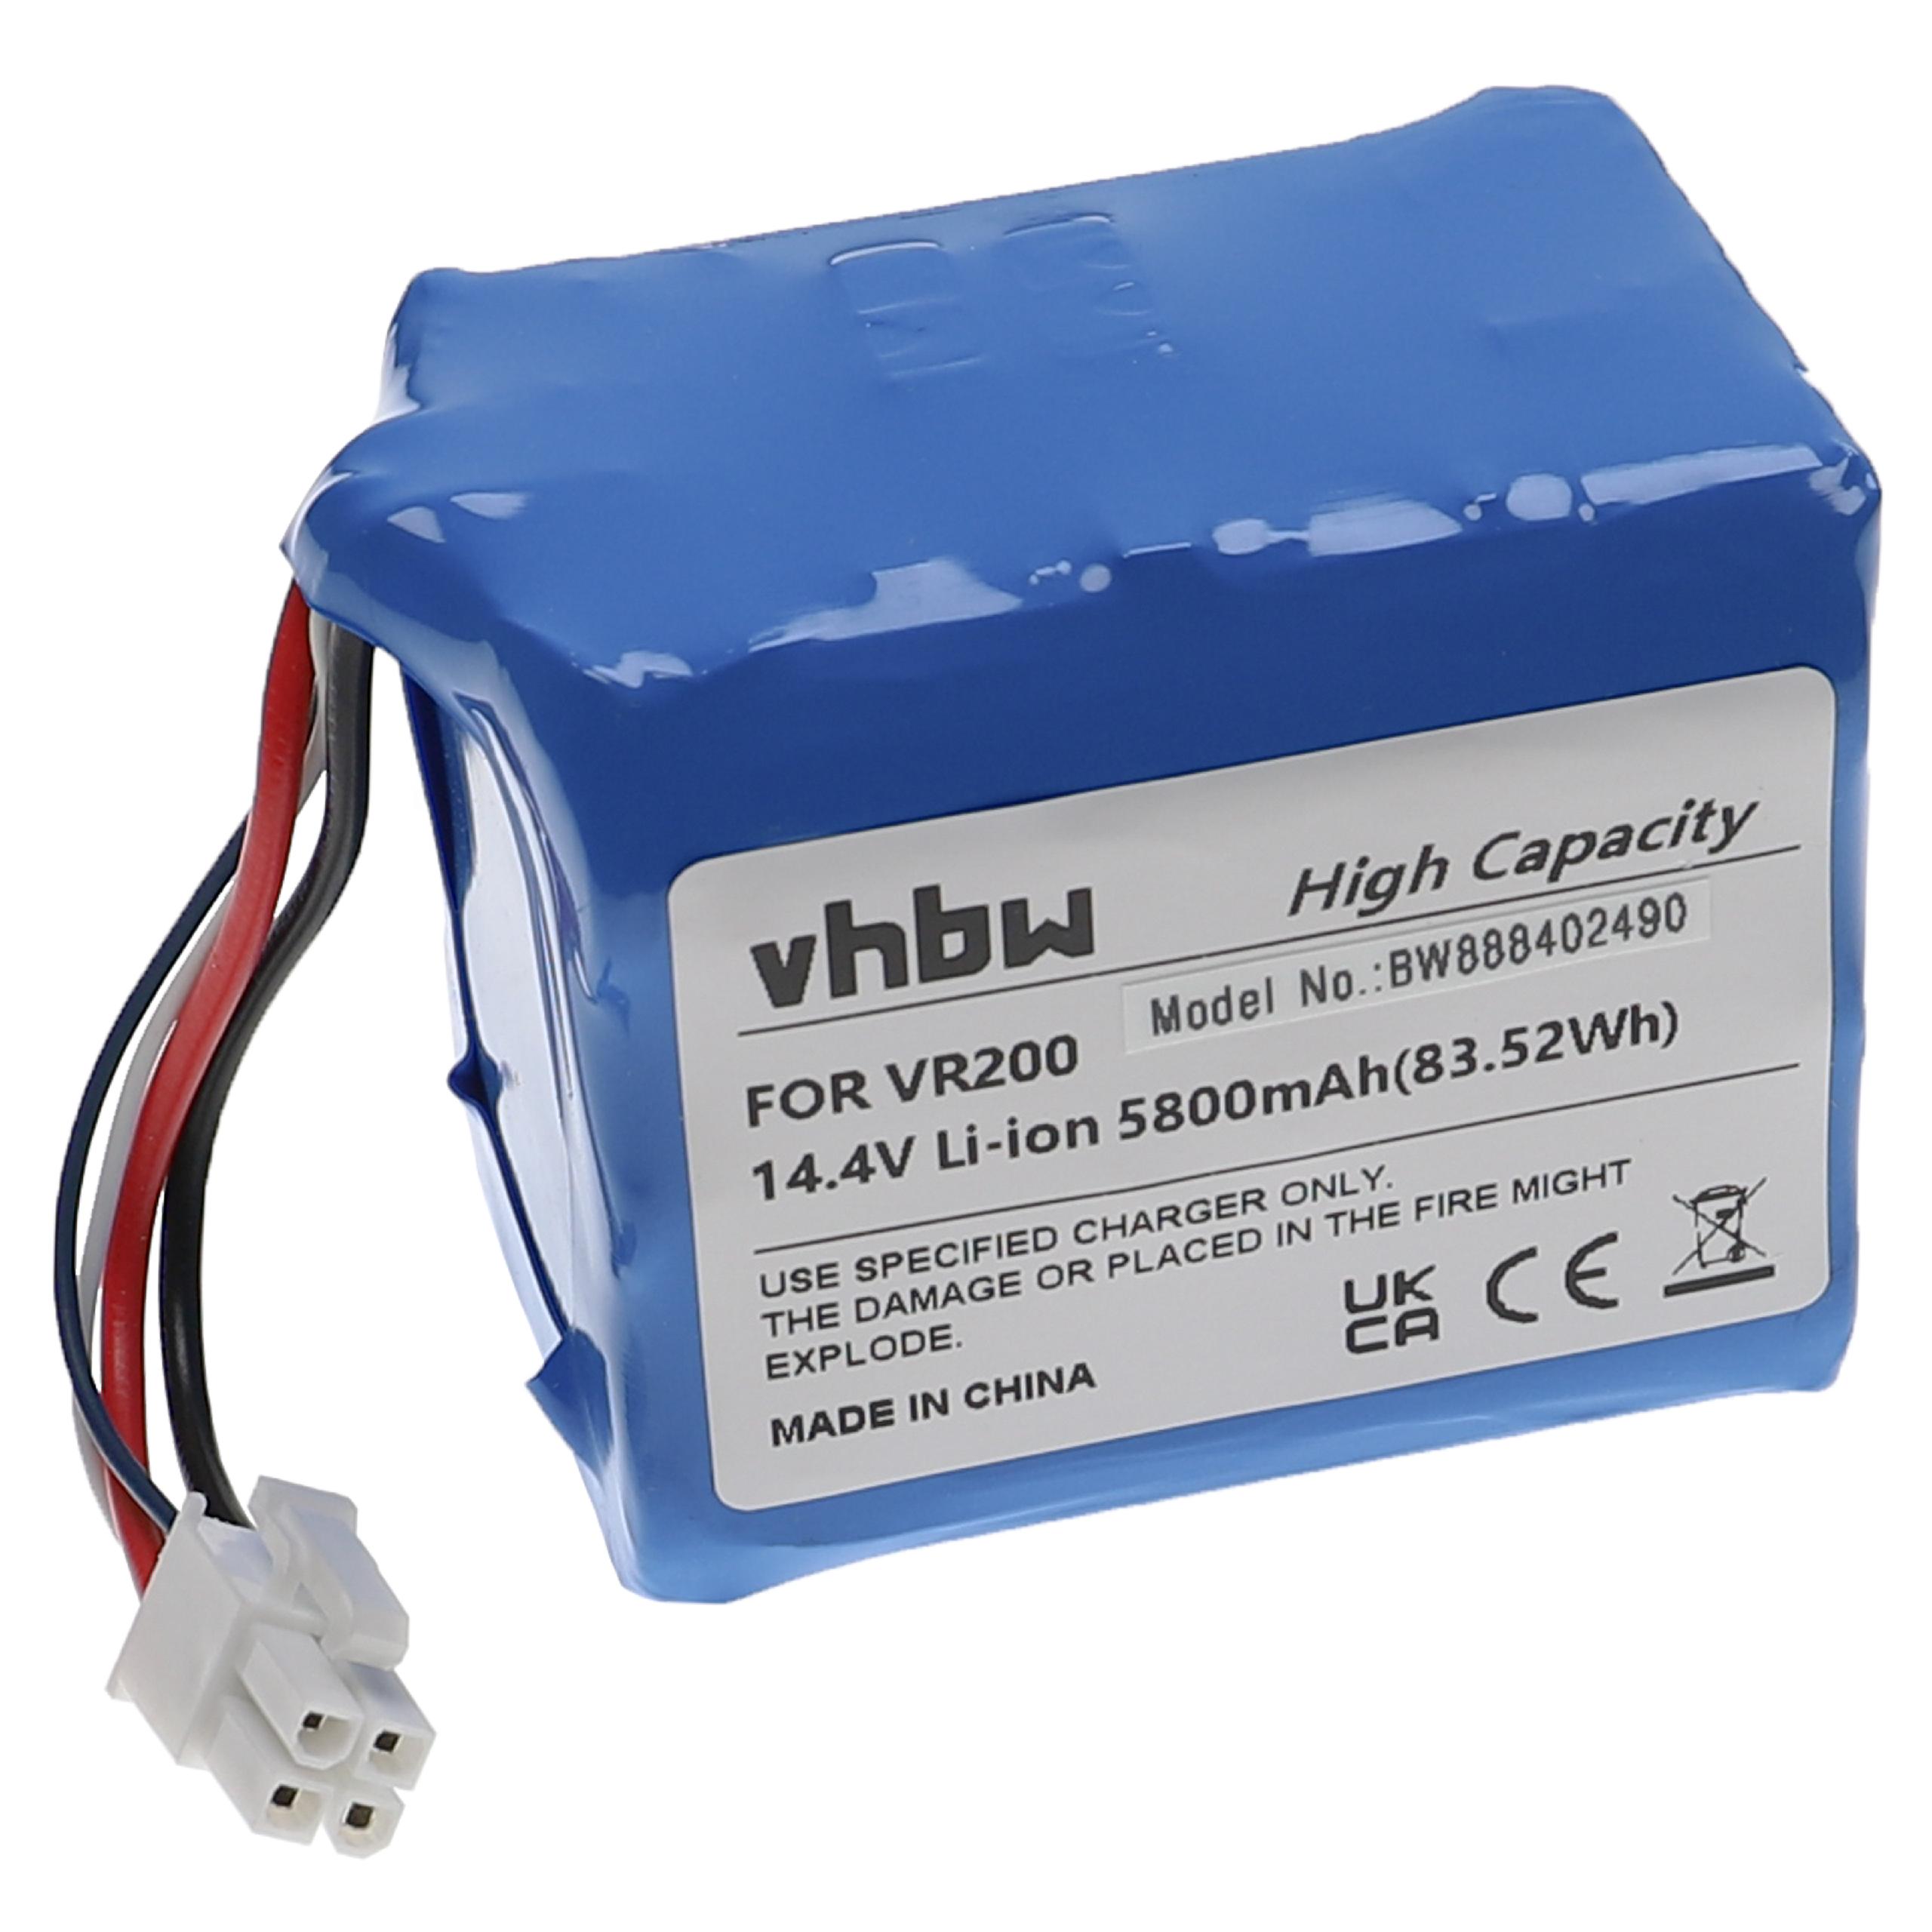 Batterie remplace Vorwerk 20884-1, 4NCR18650P2-C001A pour robot aspirateur - 5800mAh 14,4V Li-ion